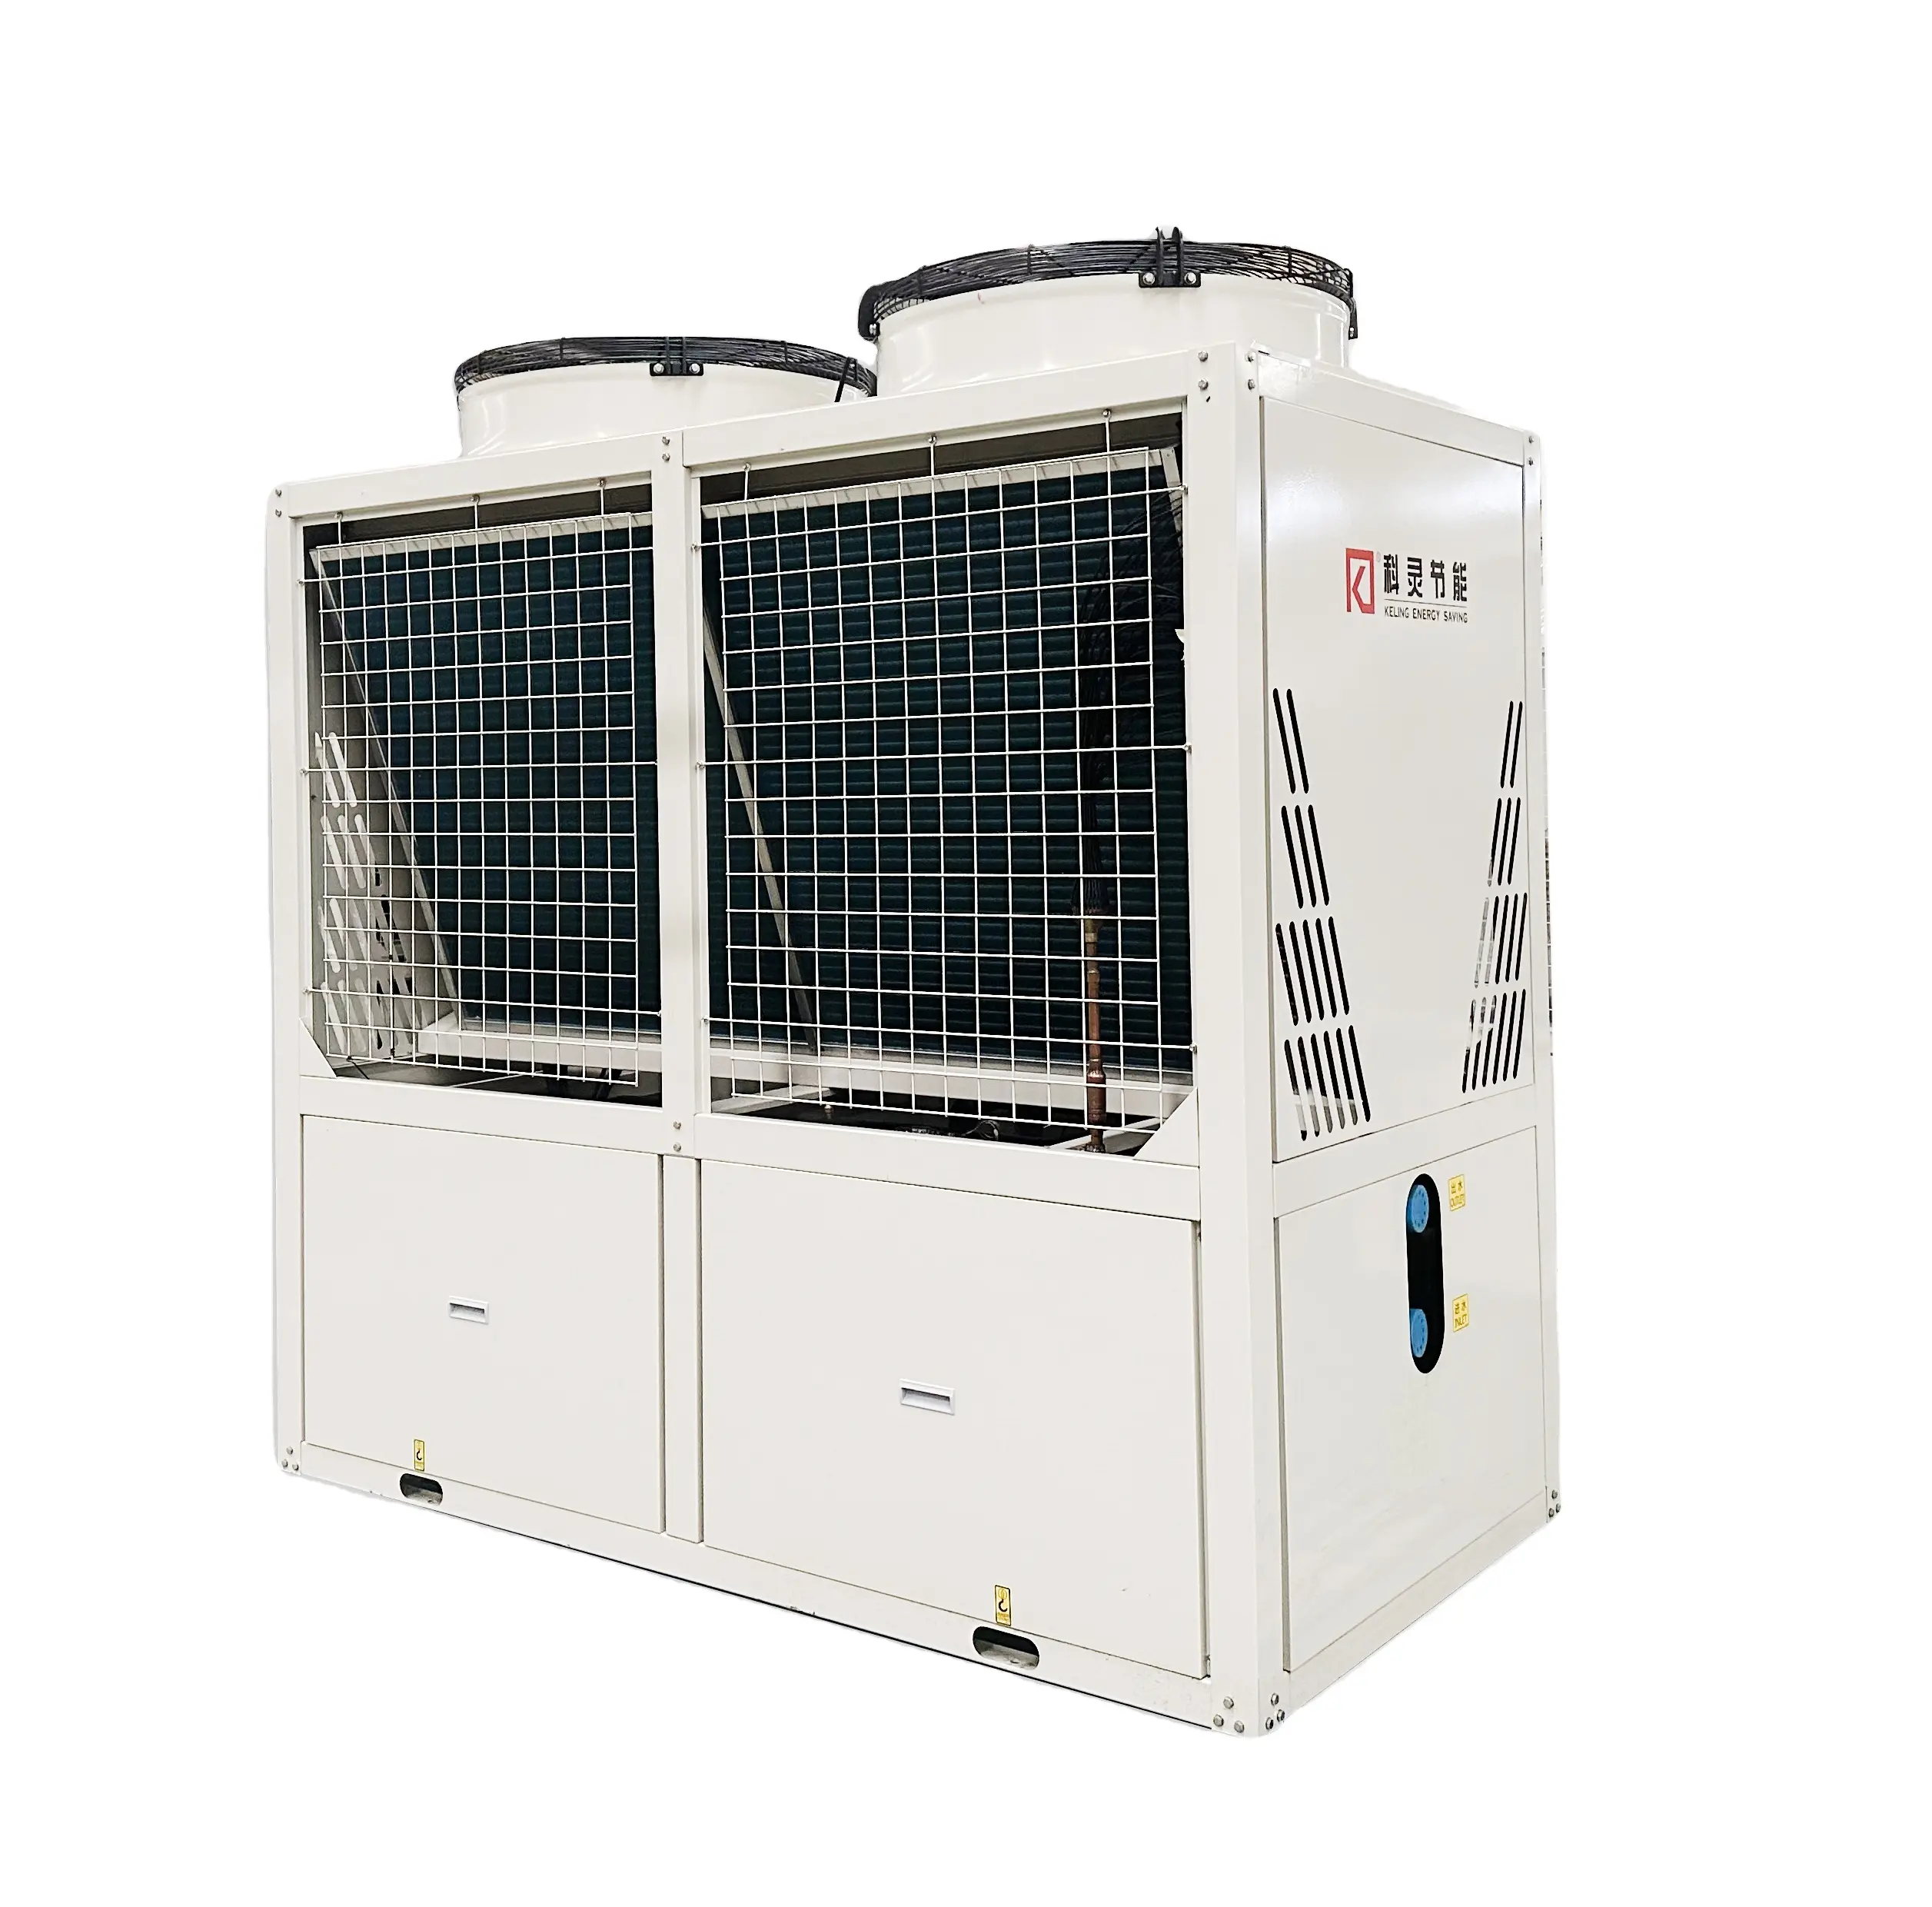 Hersteller von kommerziellen luftgekühlten wasserkühlern für hvac-systeme industrielles und landwirtschafts-kühlsystem